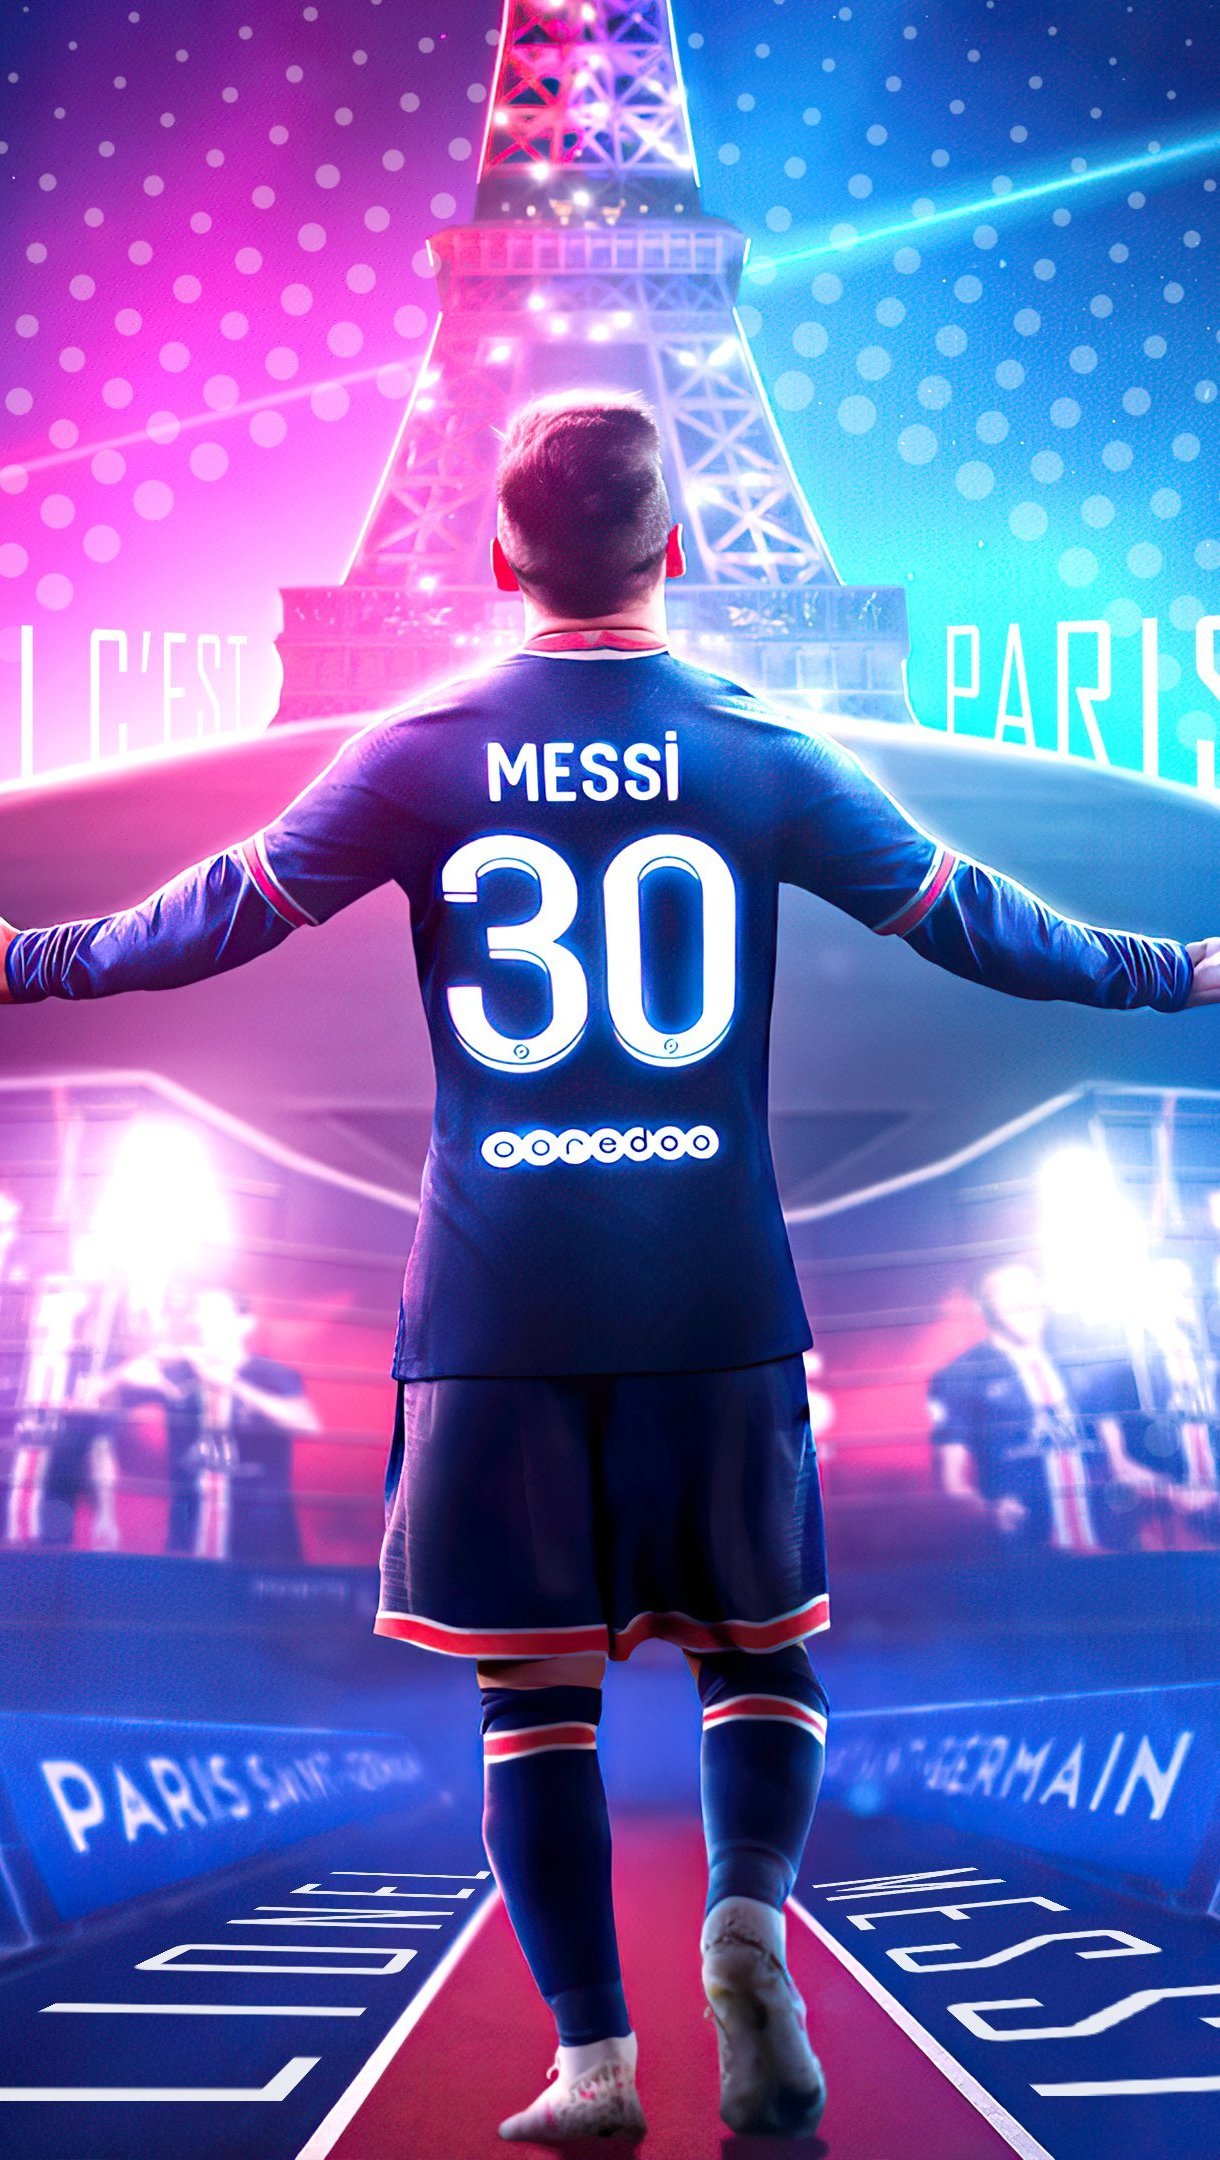 Hình nền Messi PSG với ánh sáng đầy màu sắc và sự tự tin tột độ trên gương mặt của Messi khiến bạn cảm thấy hào hứng và khát khao chiến thắng trên sân cỏ. Hãy cùng thưởng thức hình nền này để cảm nhận niềm đam mê của Messi với đội bóng này.